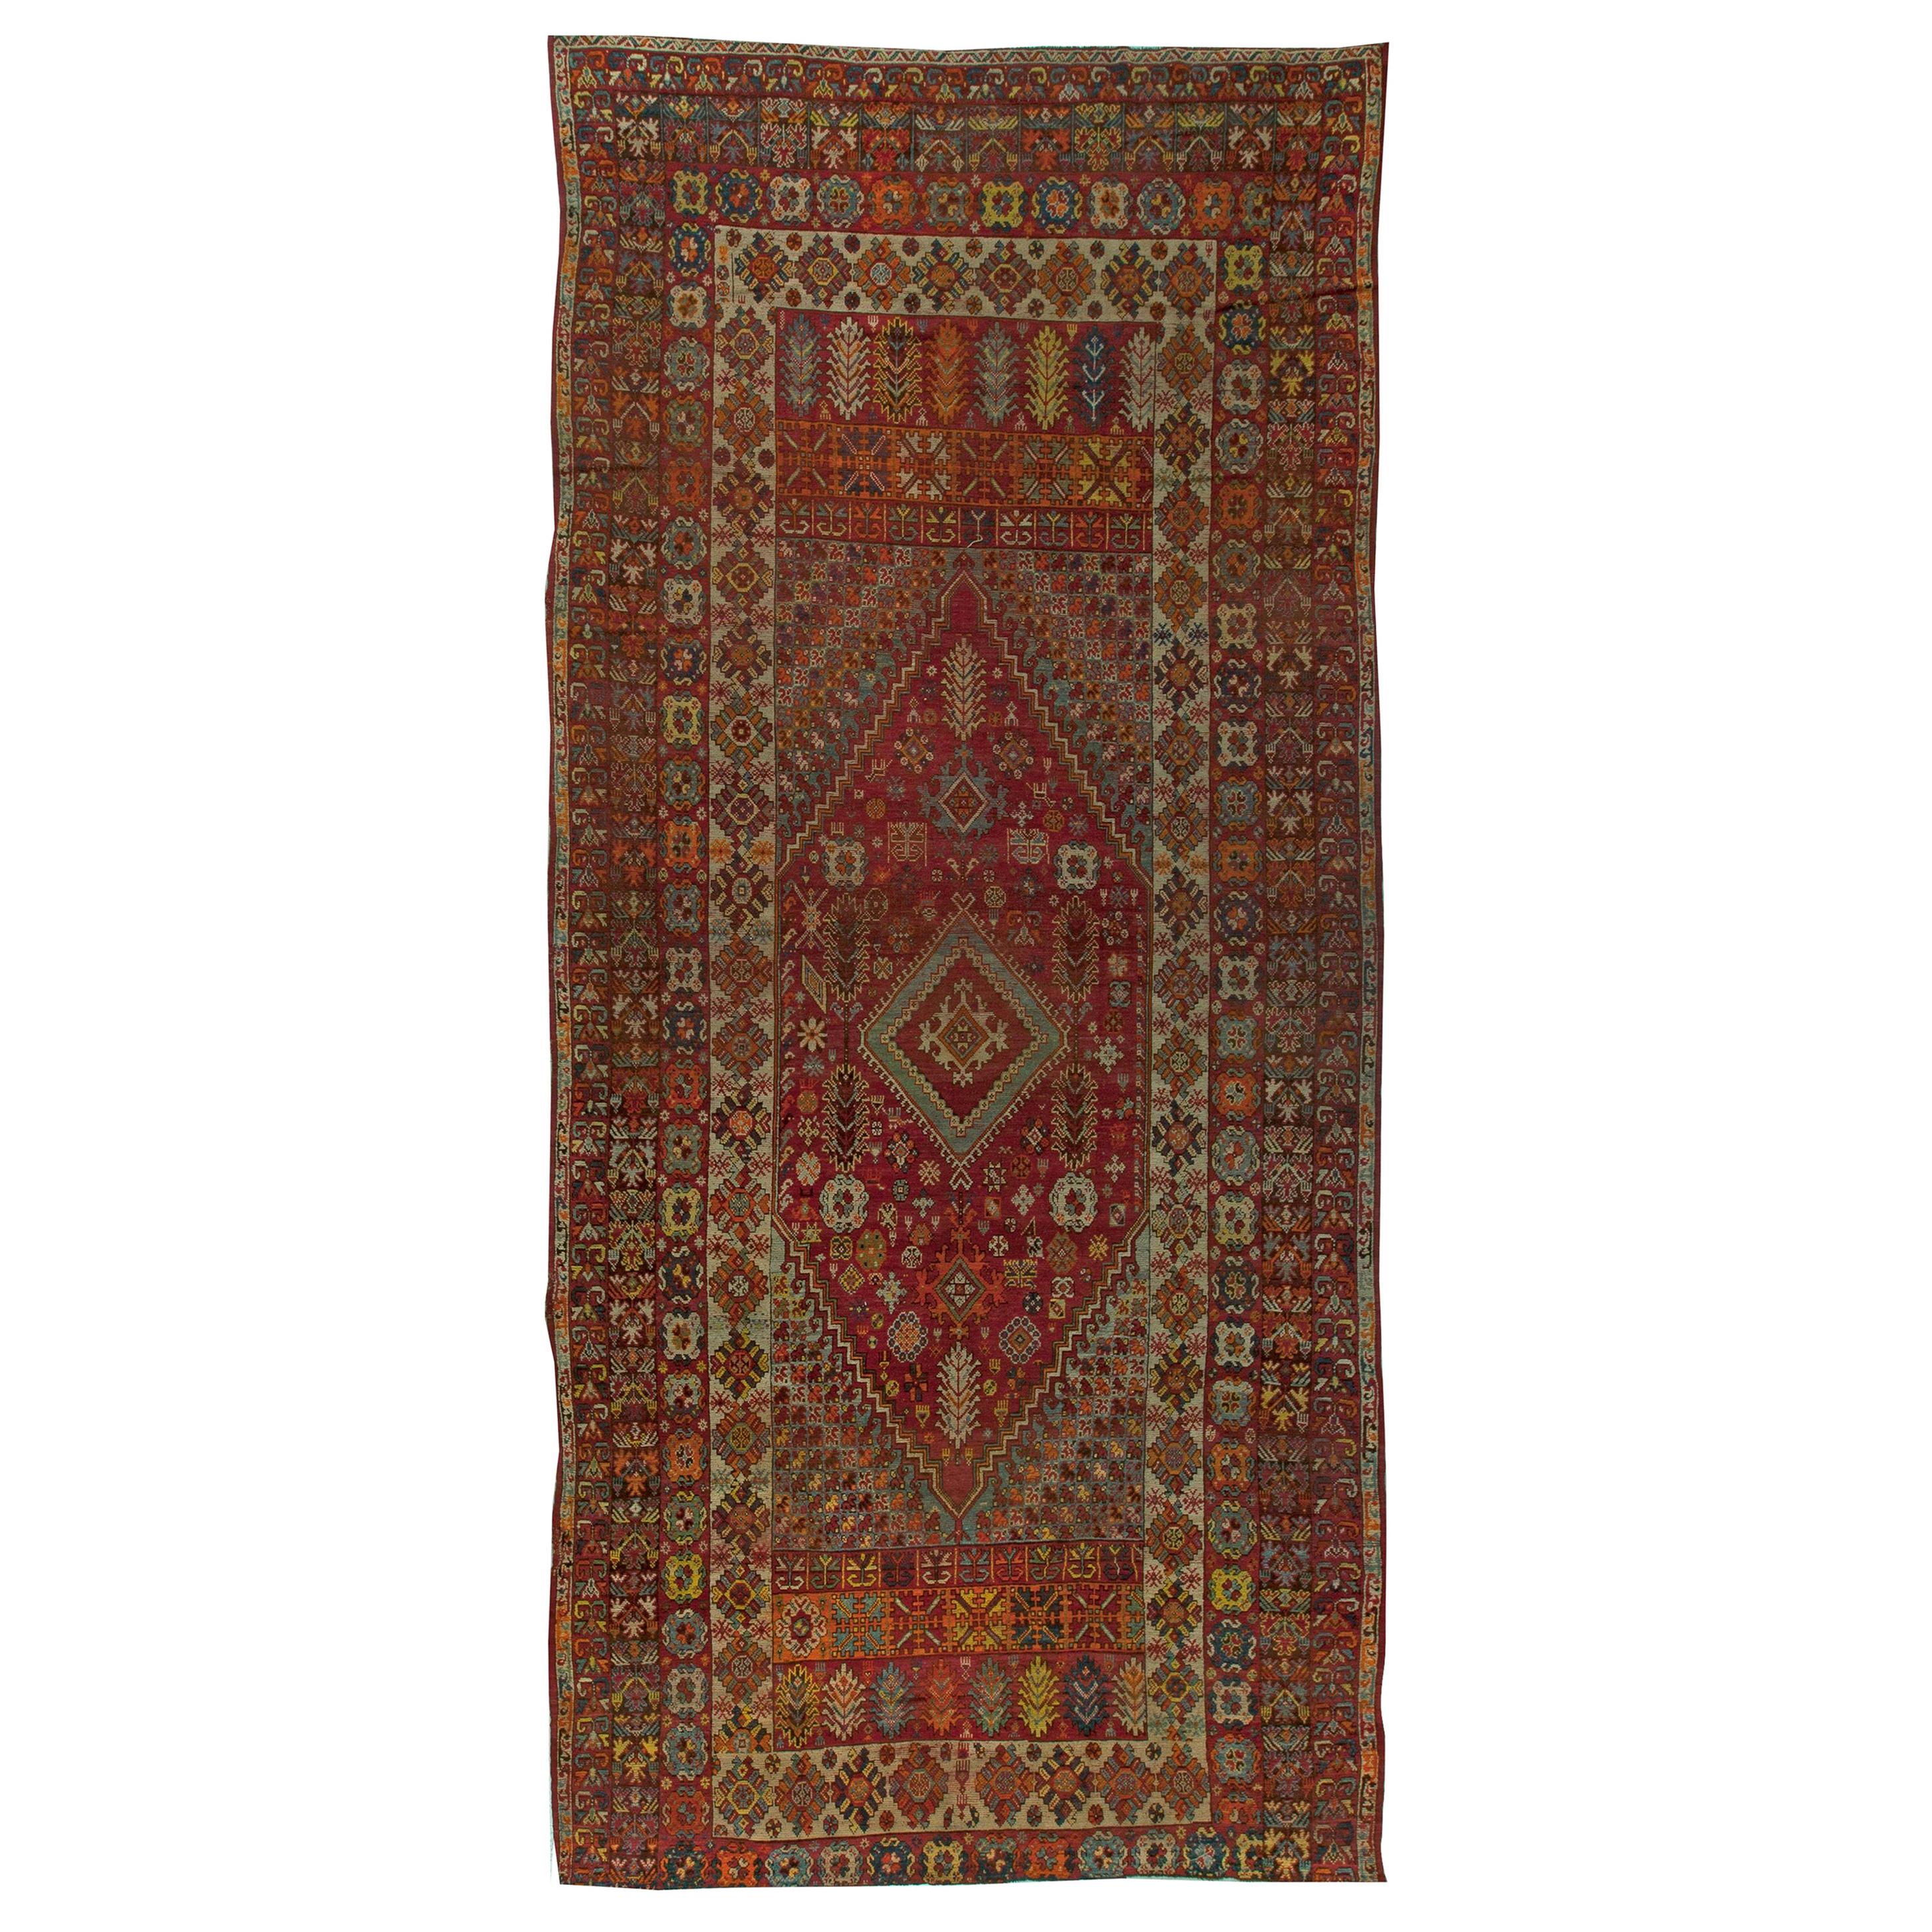 Vintage Moroccan Red Handwoven Wool Rug by Doris Leslie Blau